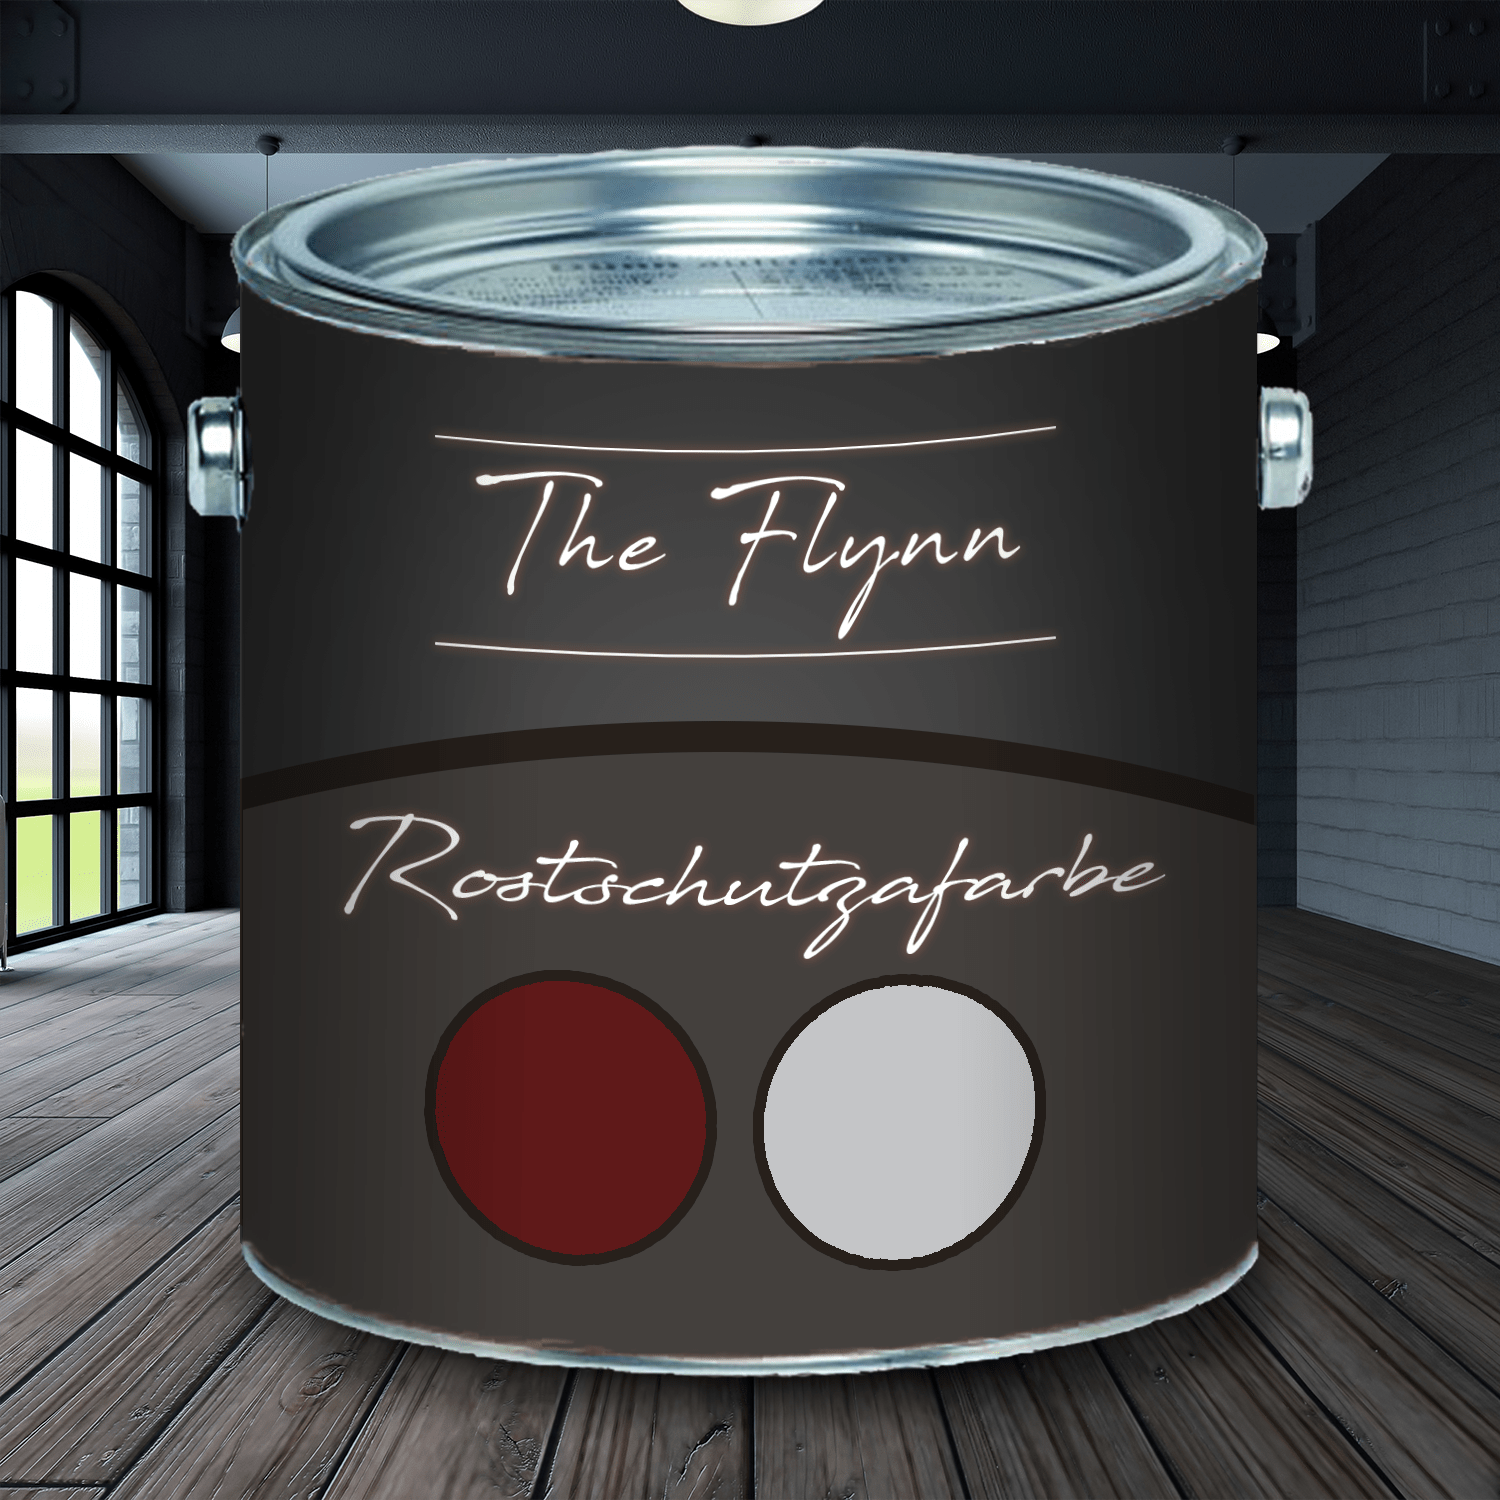 The Flynn Rostschutzfarbe - Korrosionsschutzgrundierung - FARBENLÖWE